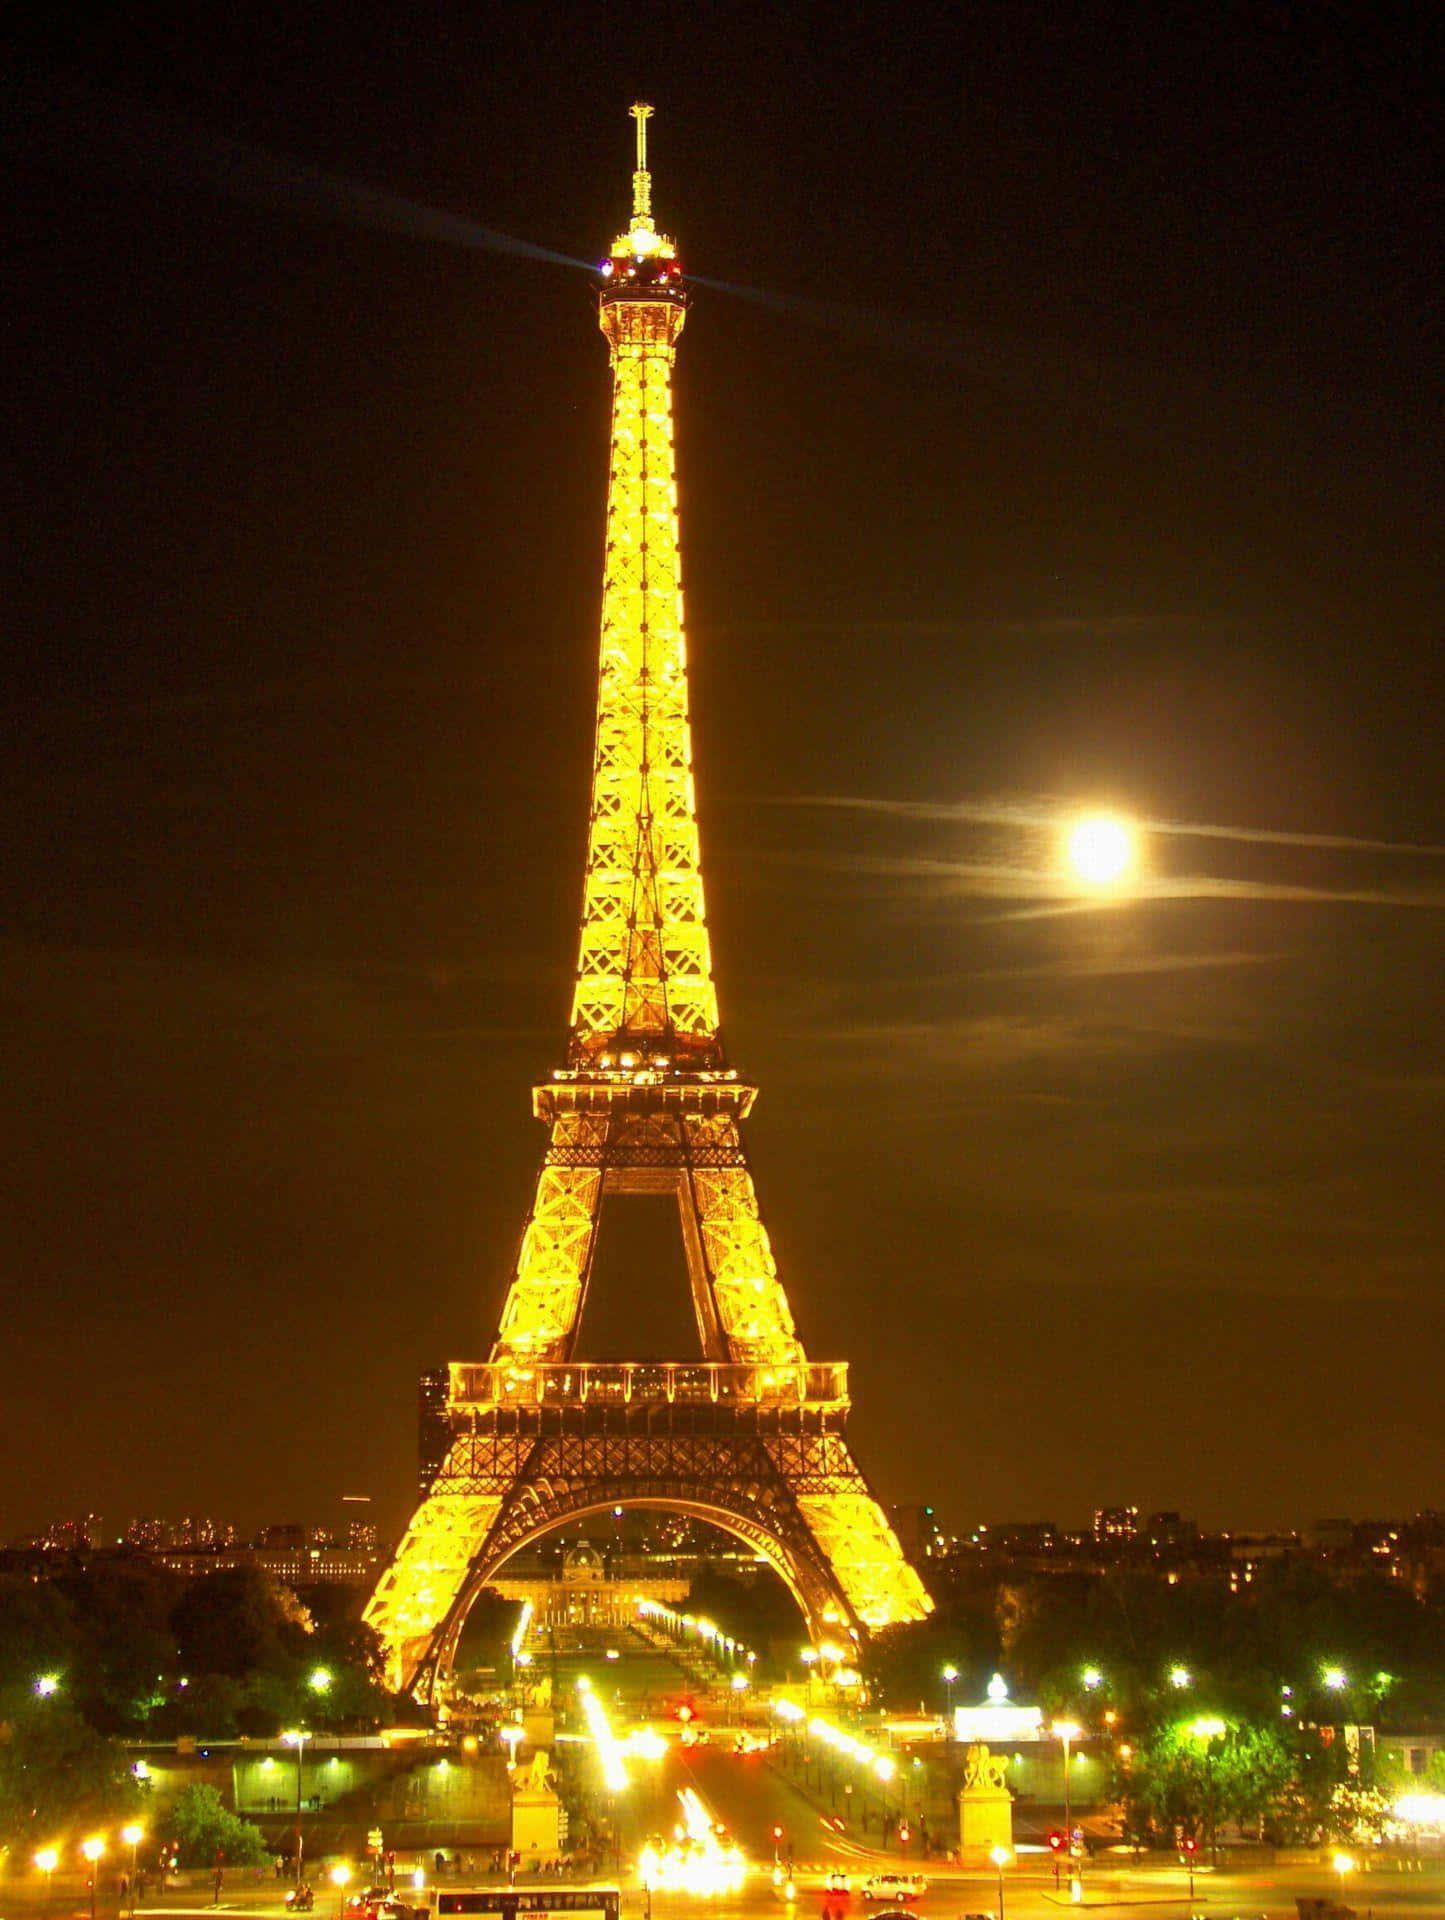 Förundrasöver De Magiska Ljusen Från Eiffeltornet På Natten.